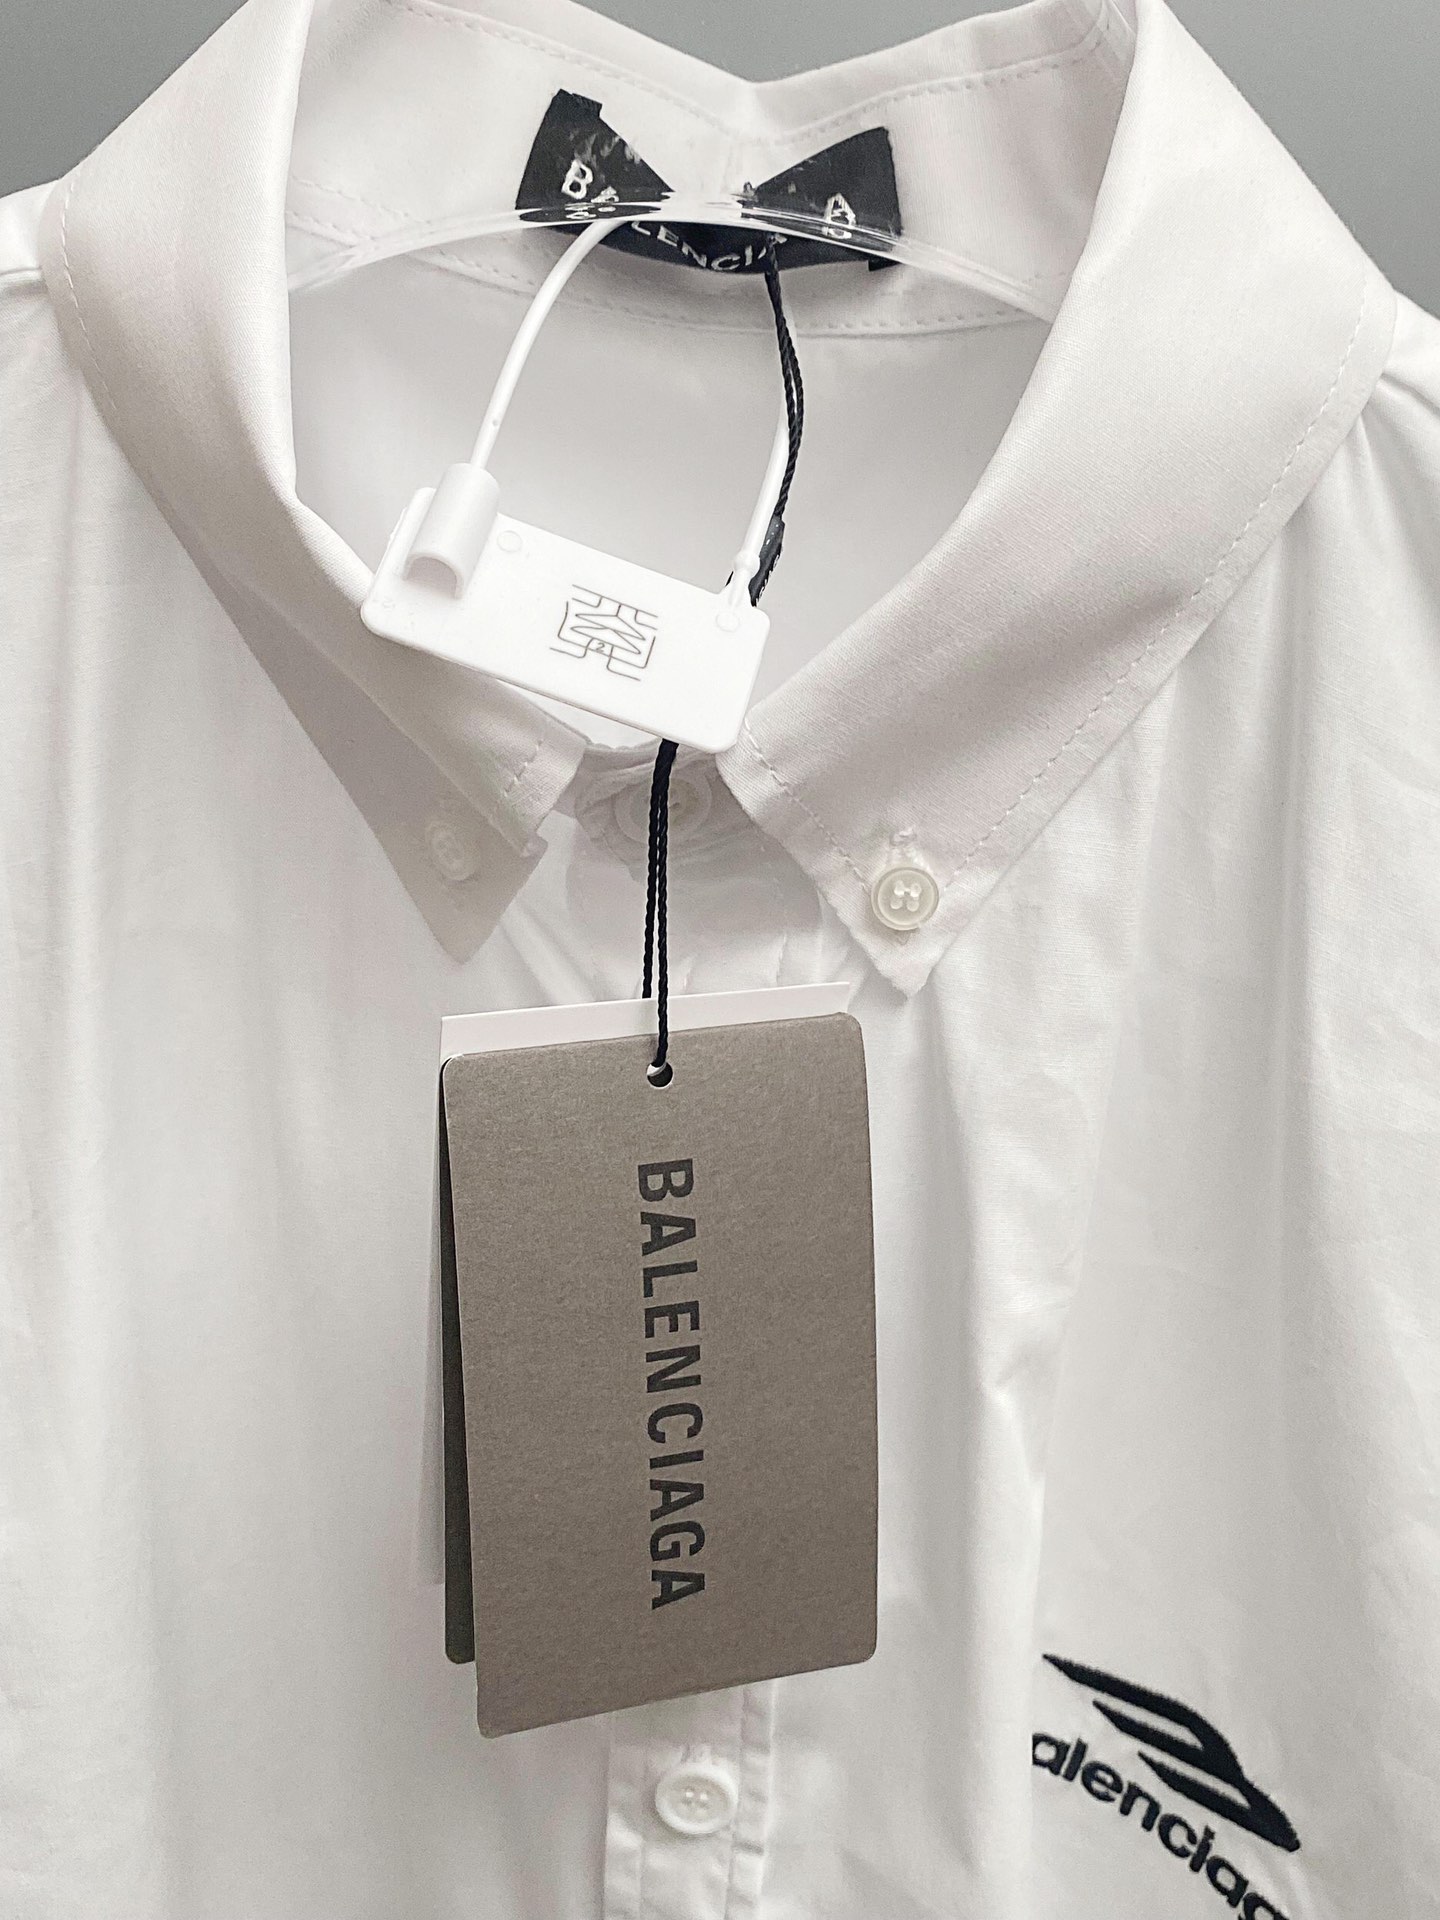 バレンシアガtシャツ 値段偽物 シャツ トップス カジュアル 柔らかい 半袖 ゆったり 男女兼用 ホワイト_7